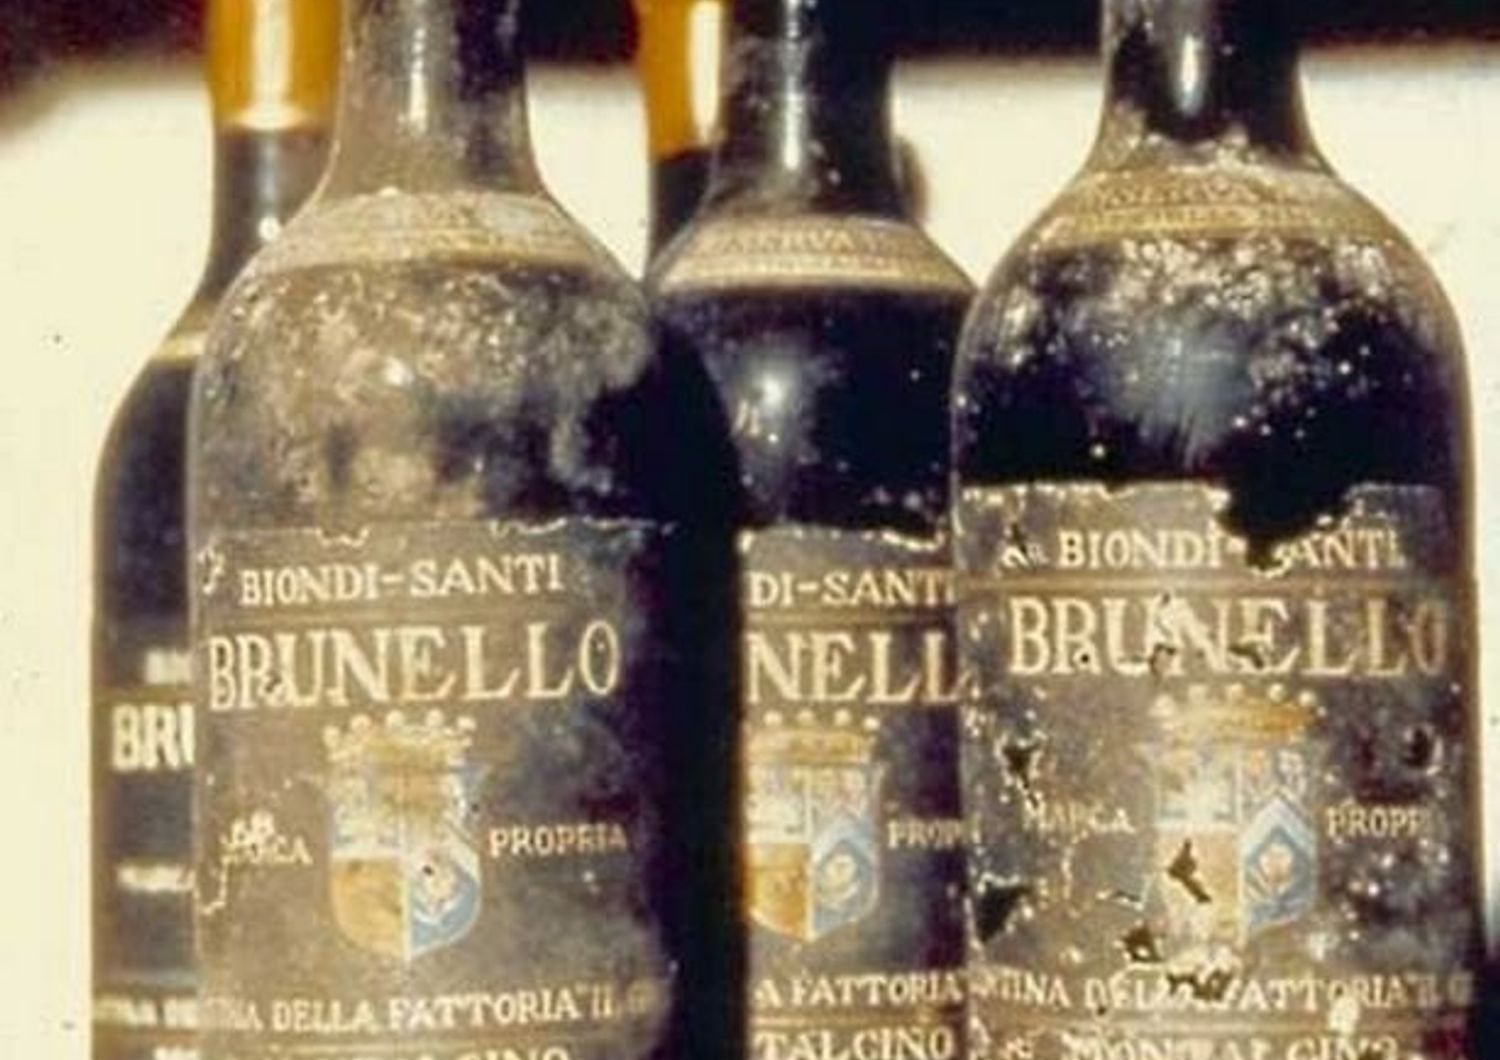 &nbsp;Brunello di Montalcino Gelardini &amp; Romani Wine Auction (twitter brunello di montalcino)